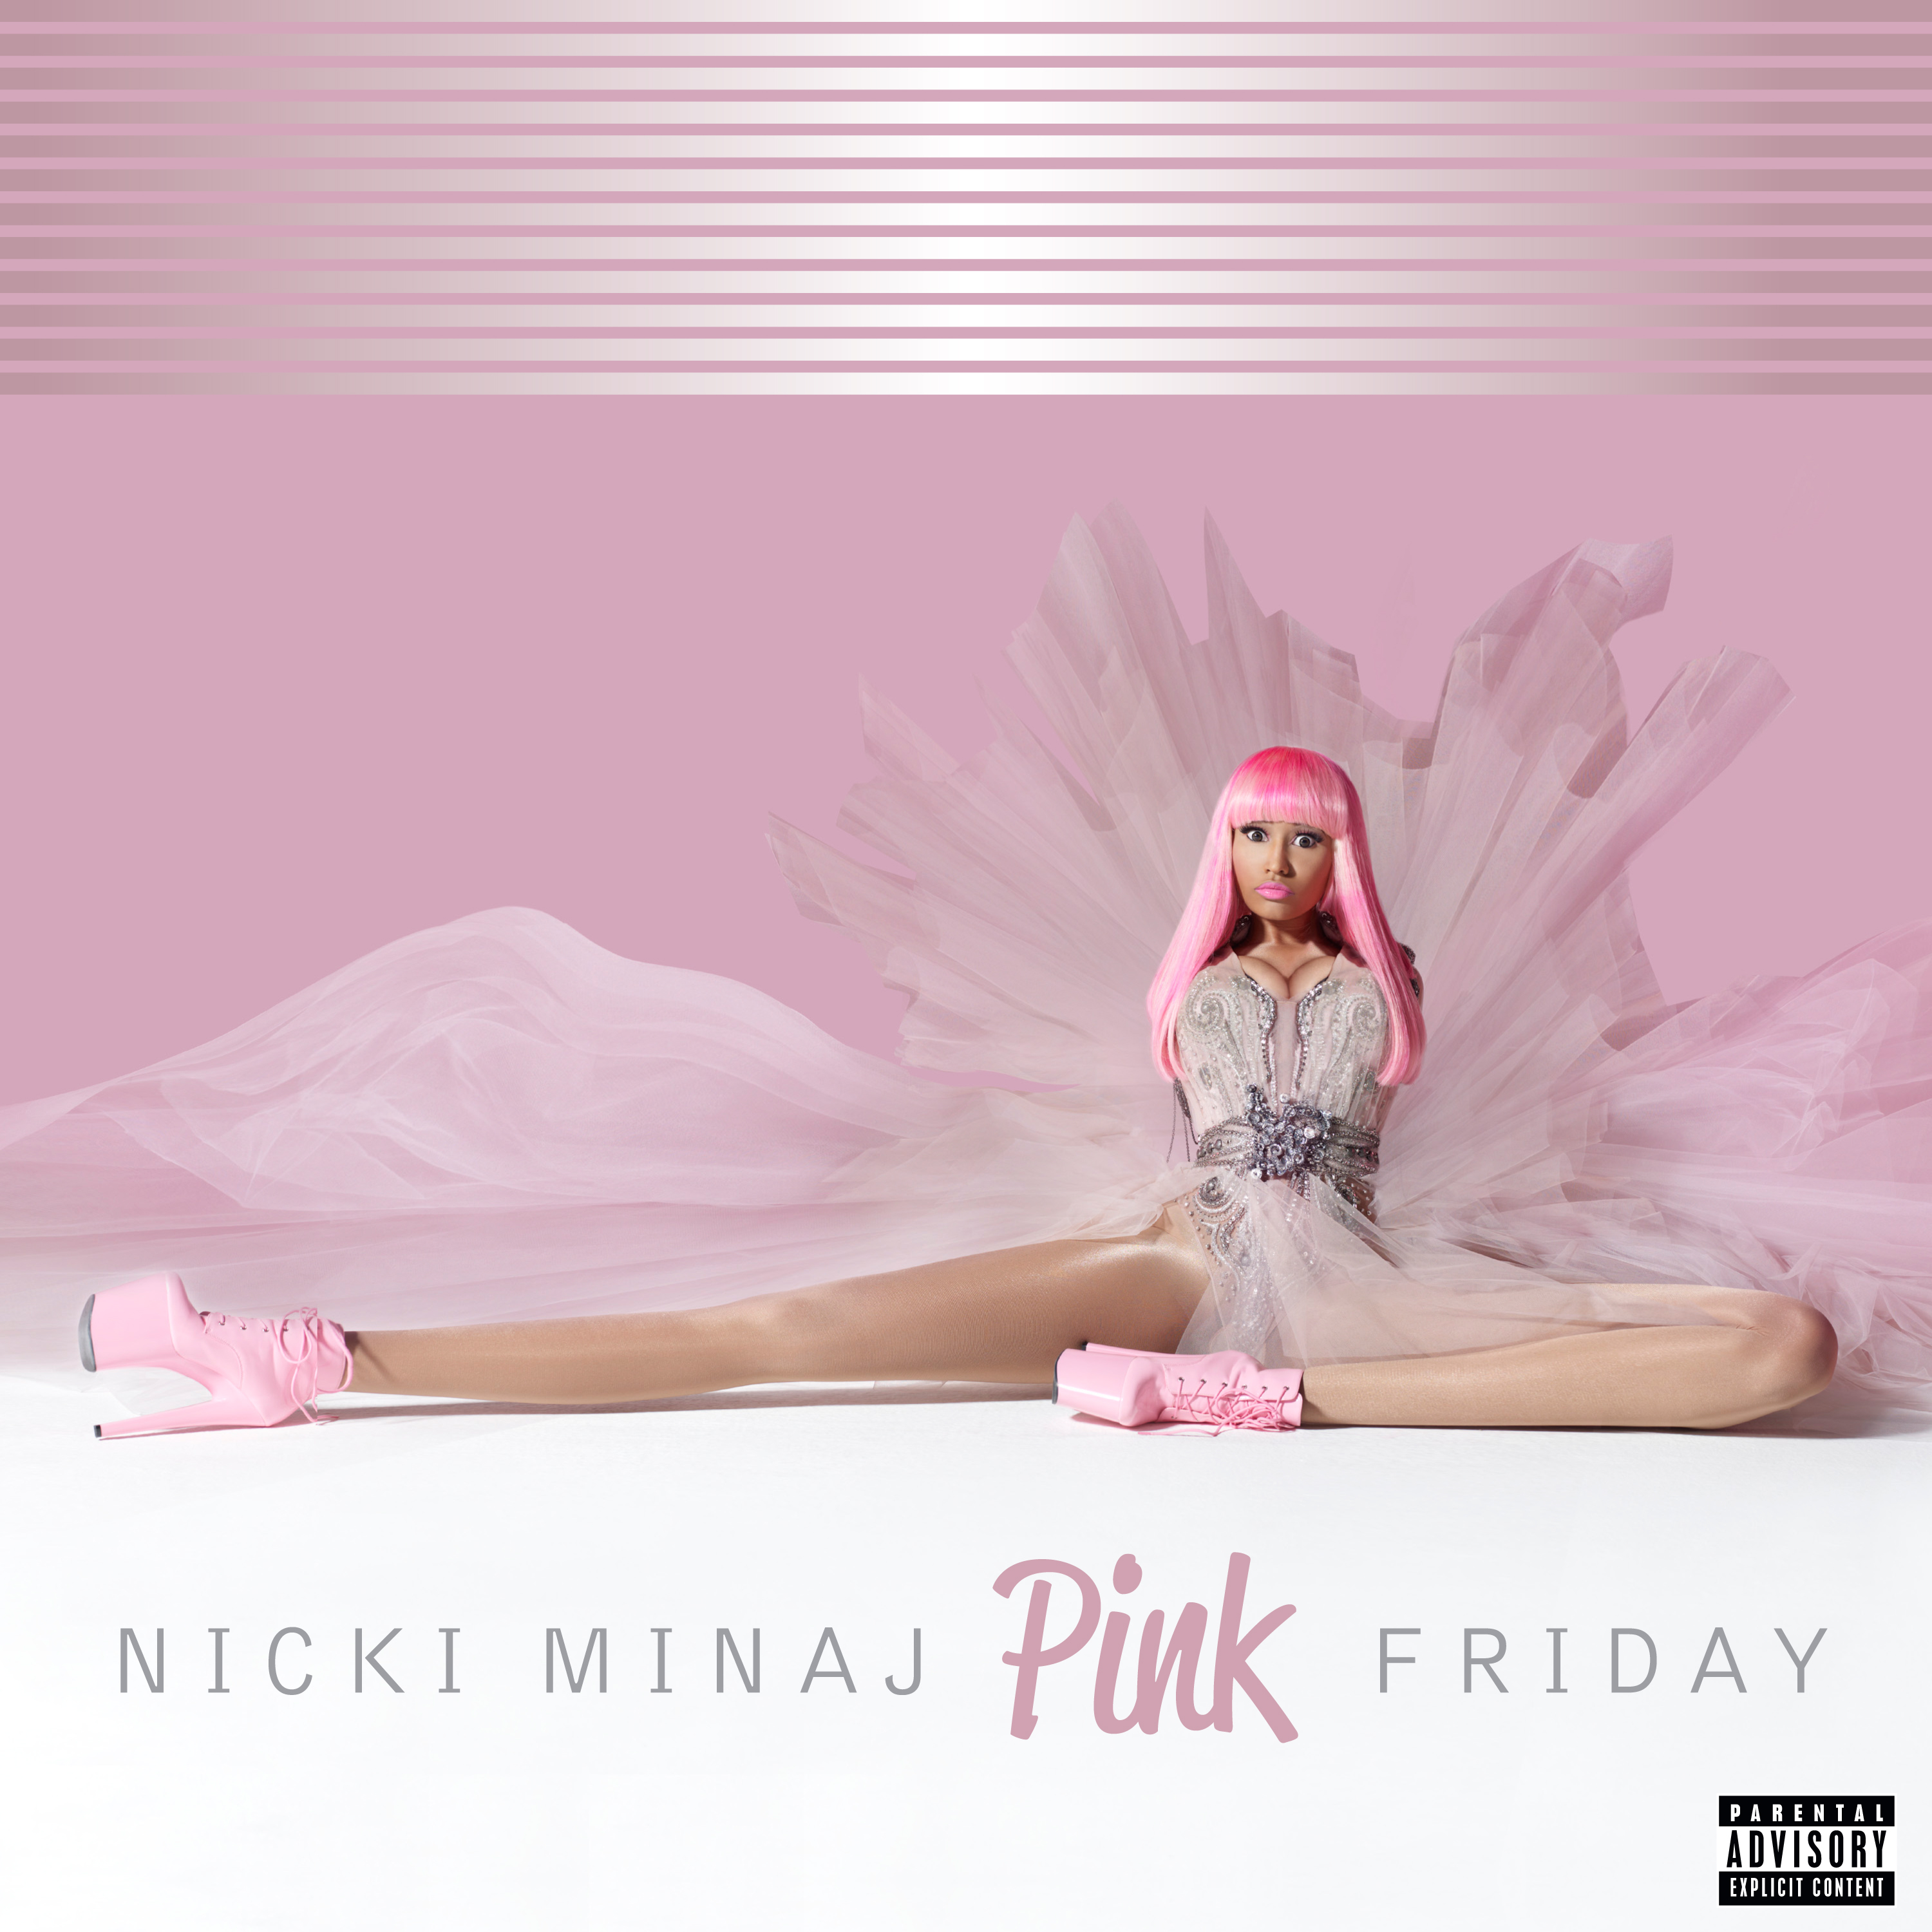 Álbum » "Pink Friday" Nicki-minaj-pink-friday-high-resolution